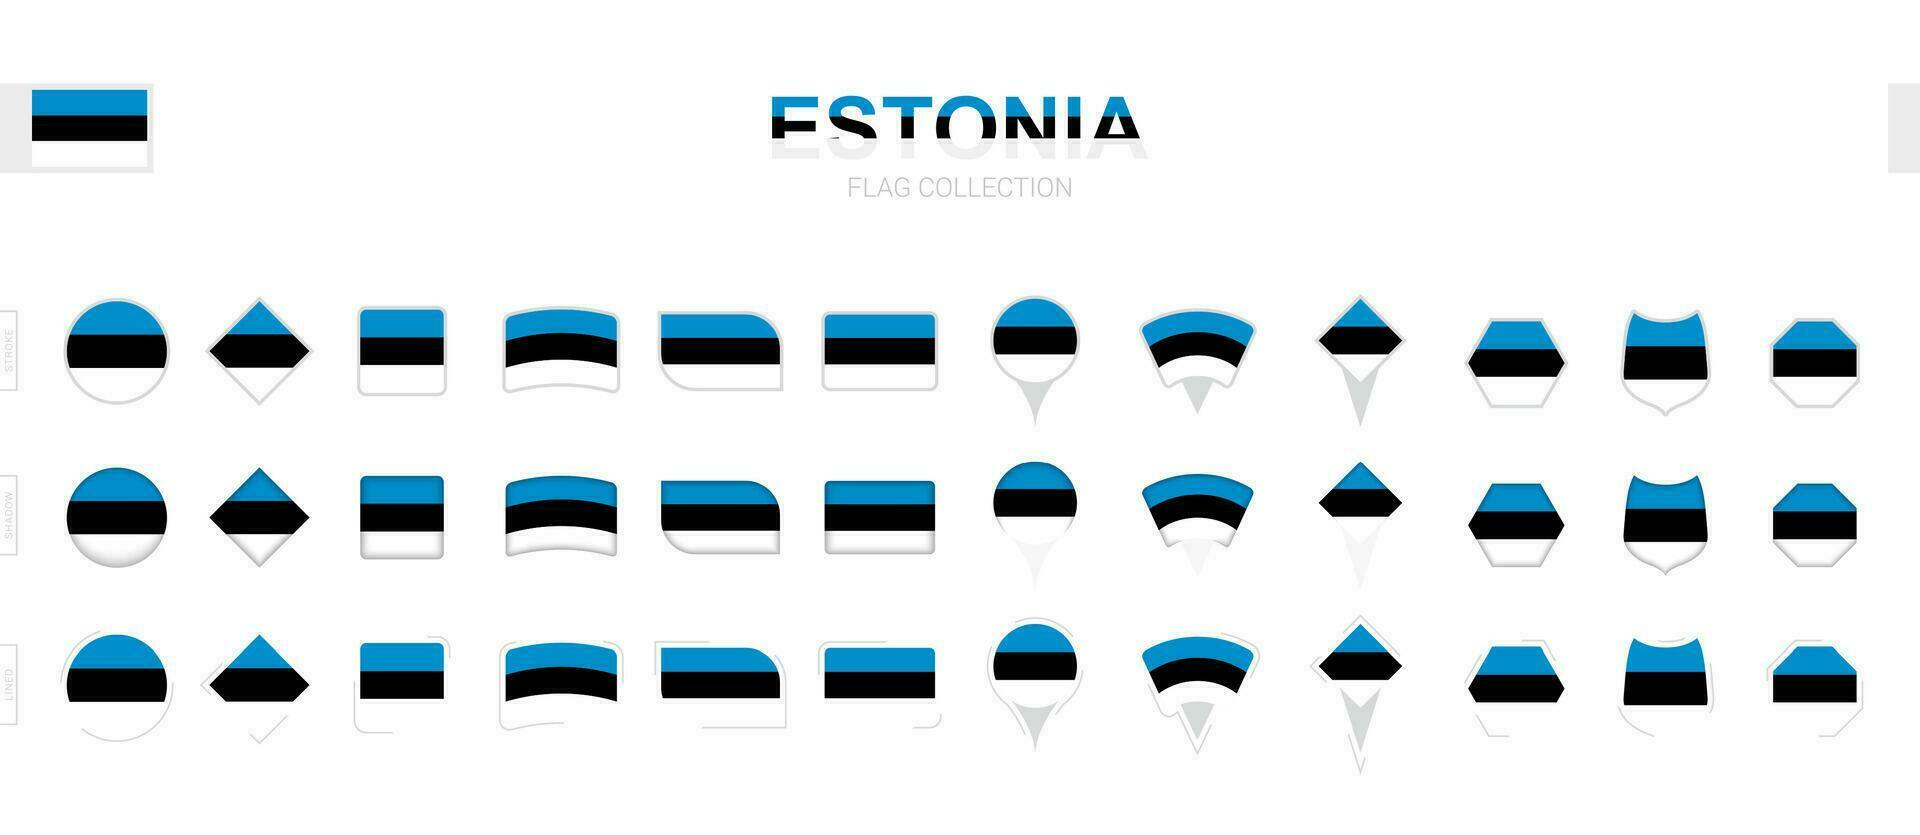 grande colección de Estonia banderas de varios formas y efectos vector